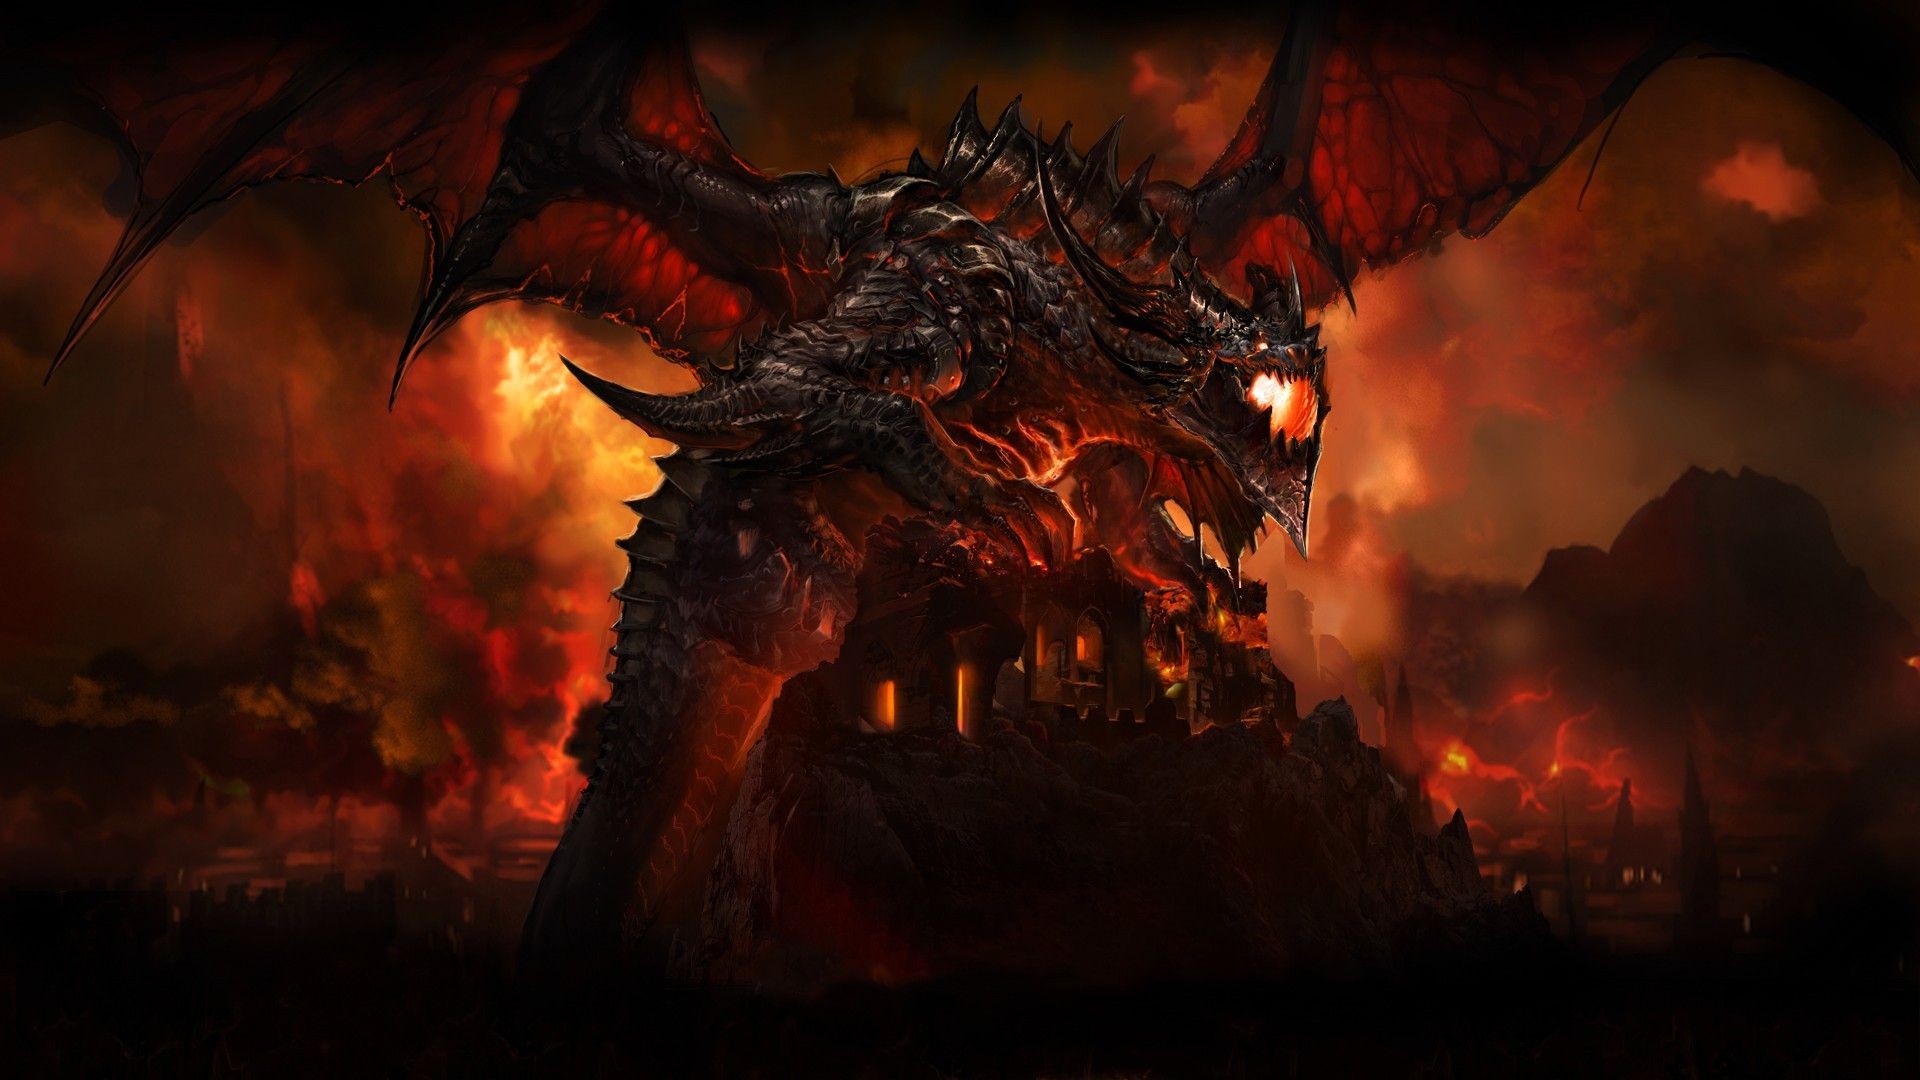 World Of Warcraft Cataclysm - HD Wallpaper 